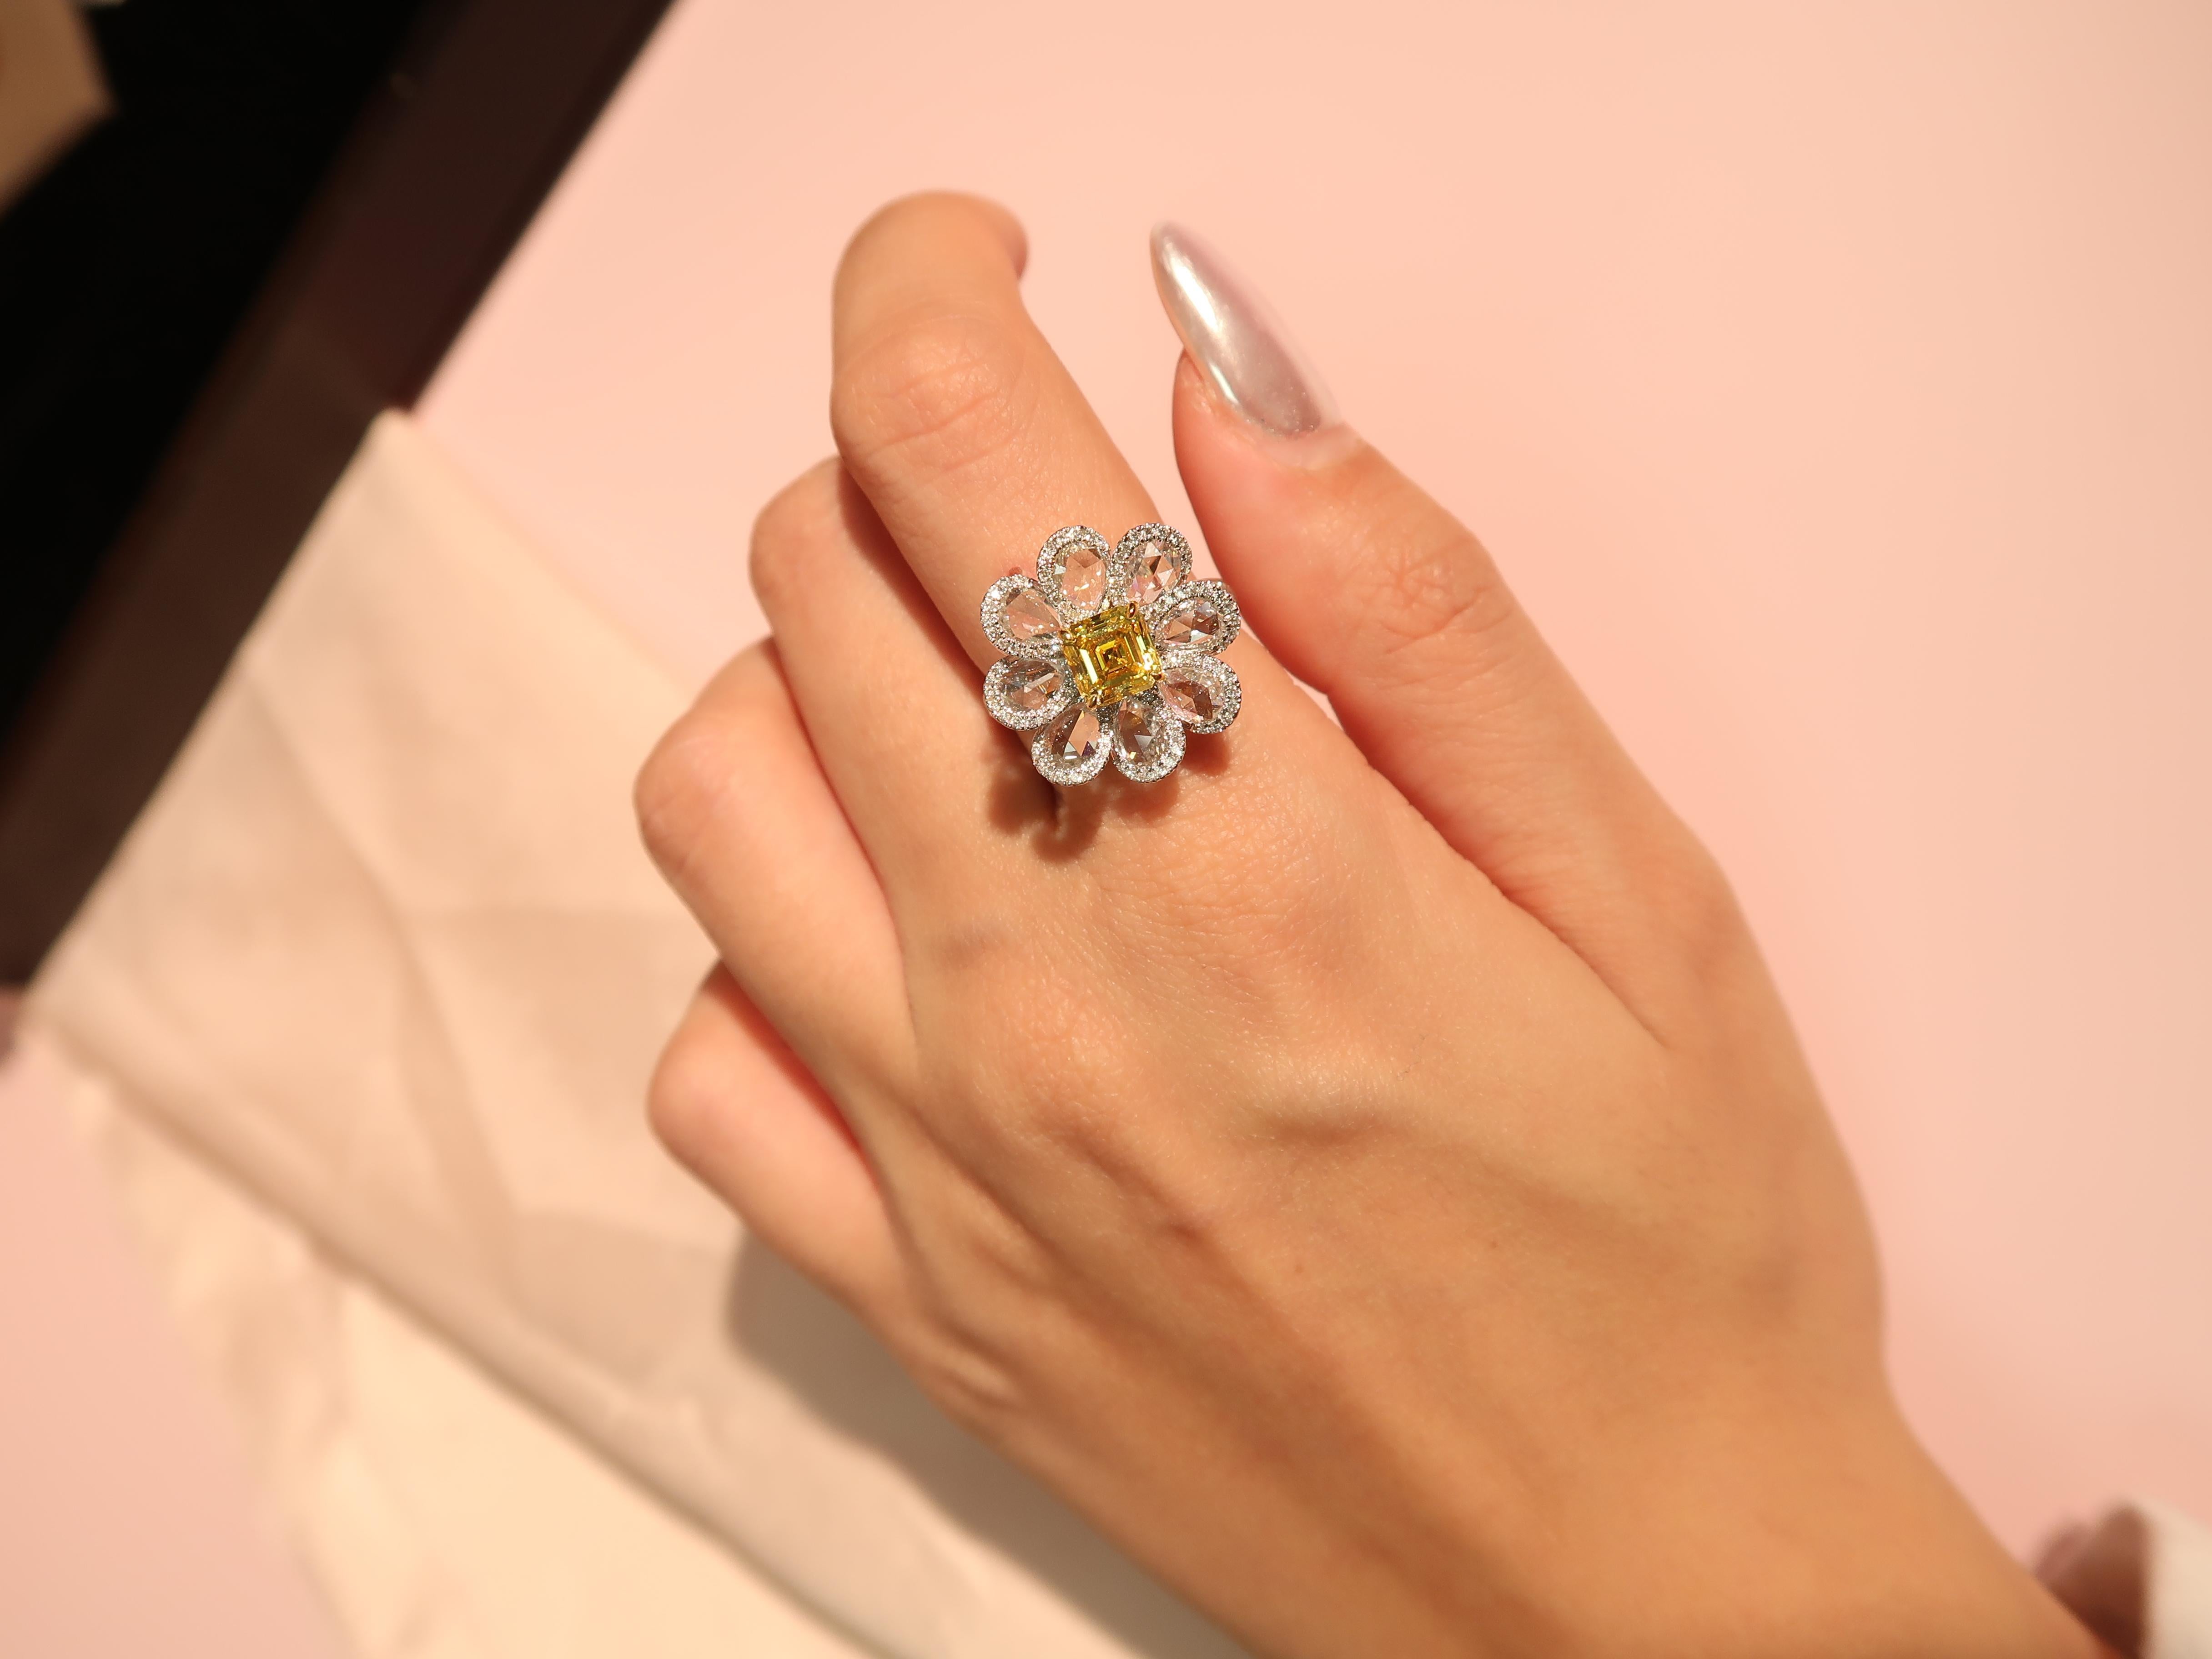 Ein wunderschöner Ring mit 1,04 Karat Fancy Vivid Yellow-Diamanten im Smaragdschliff, GIA-zertifiziert mit VVS2, eingefasst in ein charmantes Blumenmotiv. Der Ring besteht aus 8 birnenförmigen Diamanten mit einem Gewicht von 1,36 Karat, die von 116